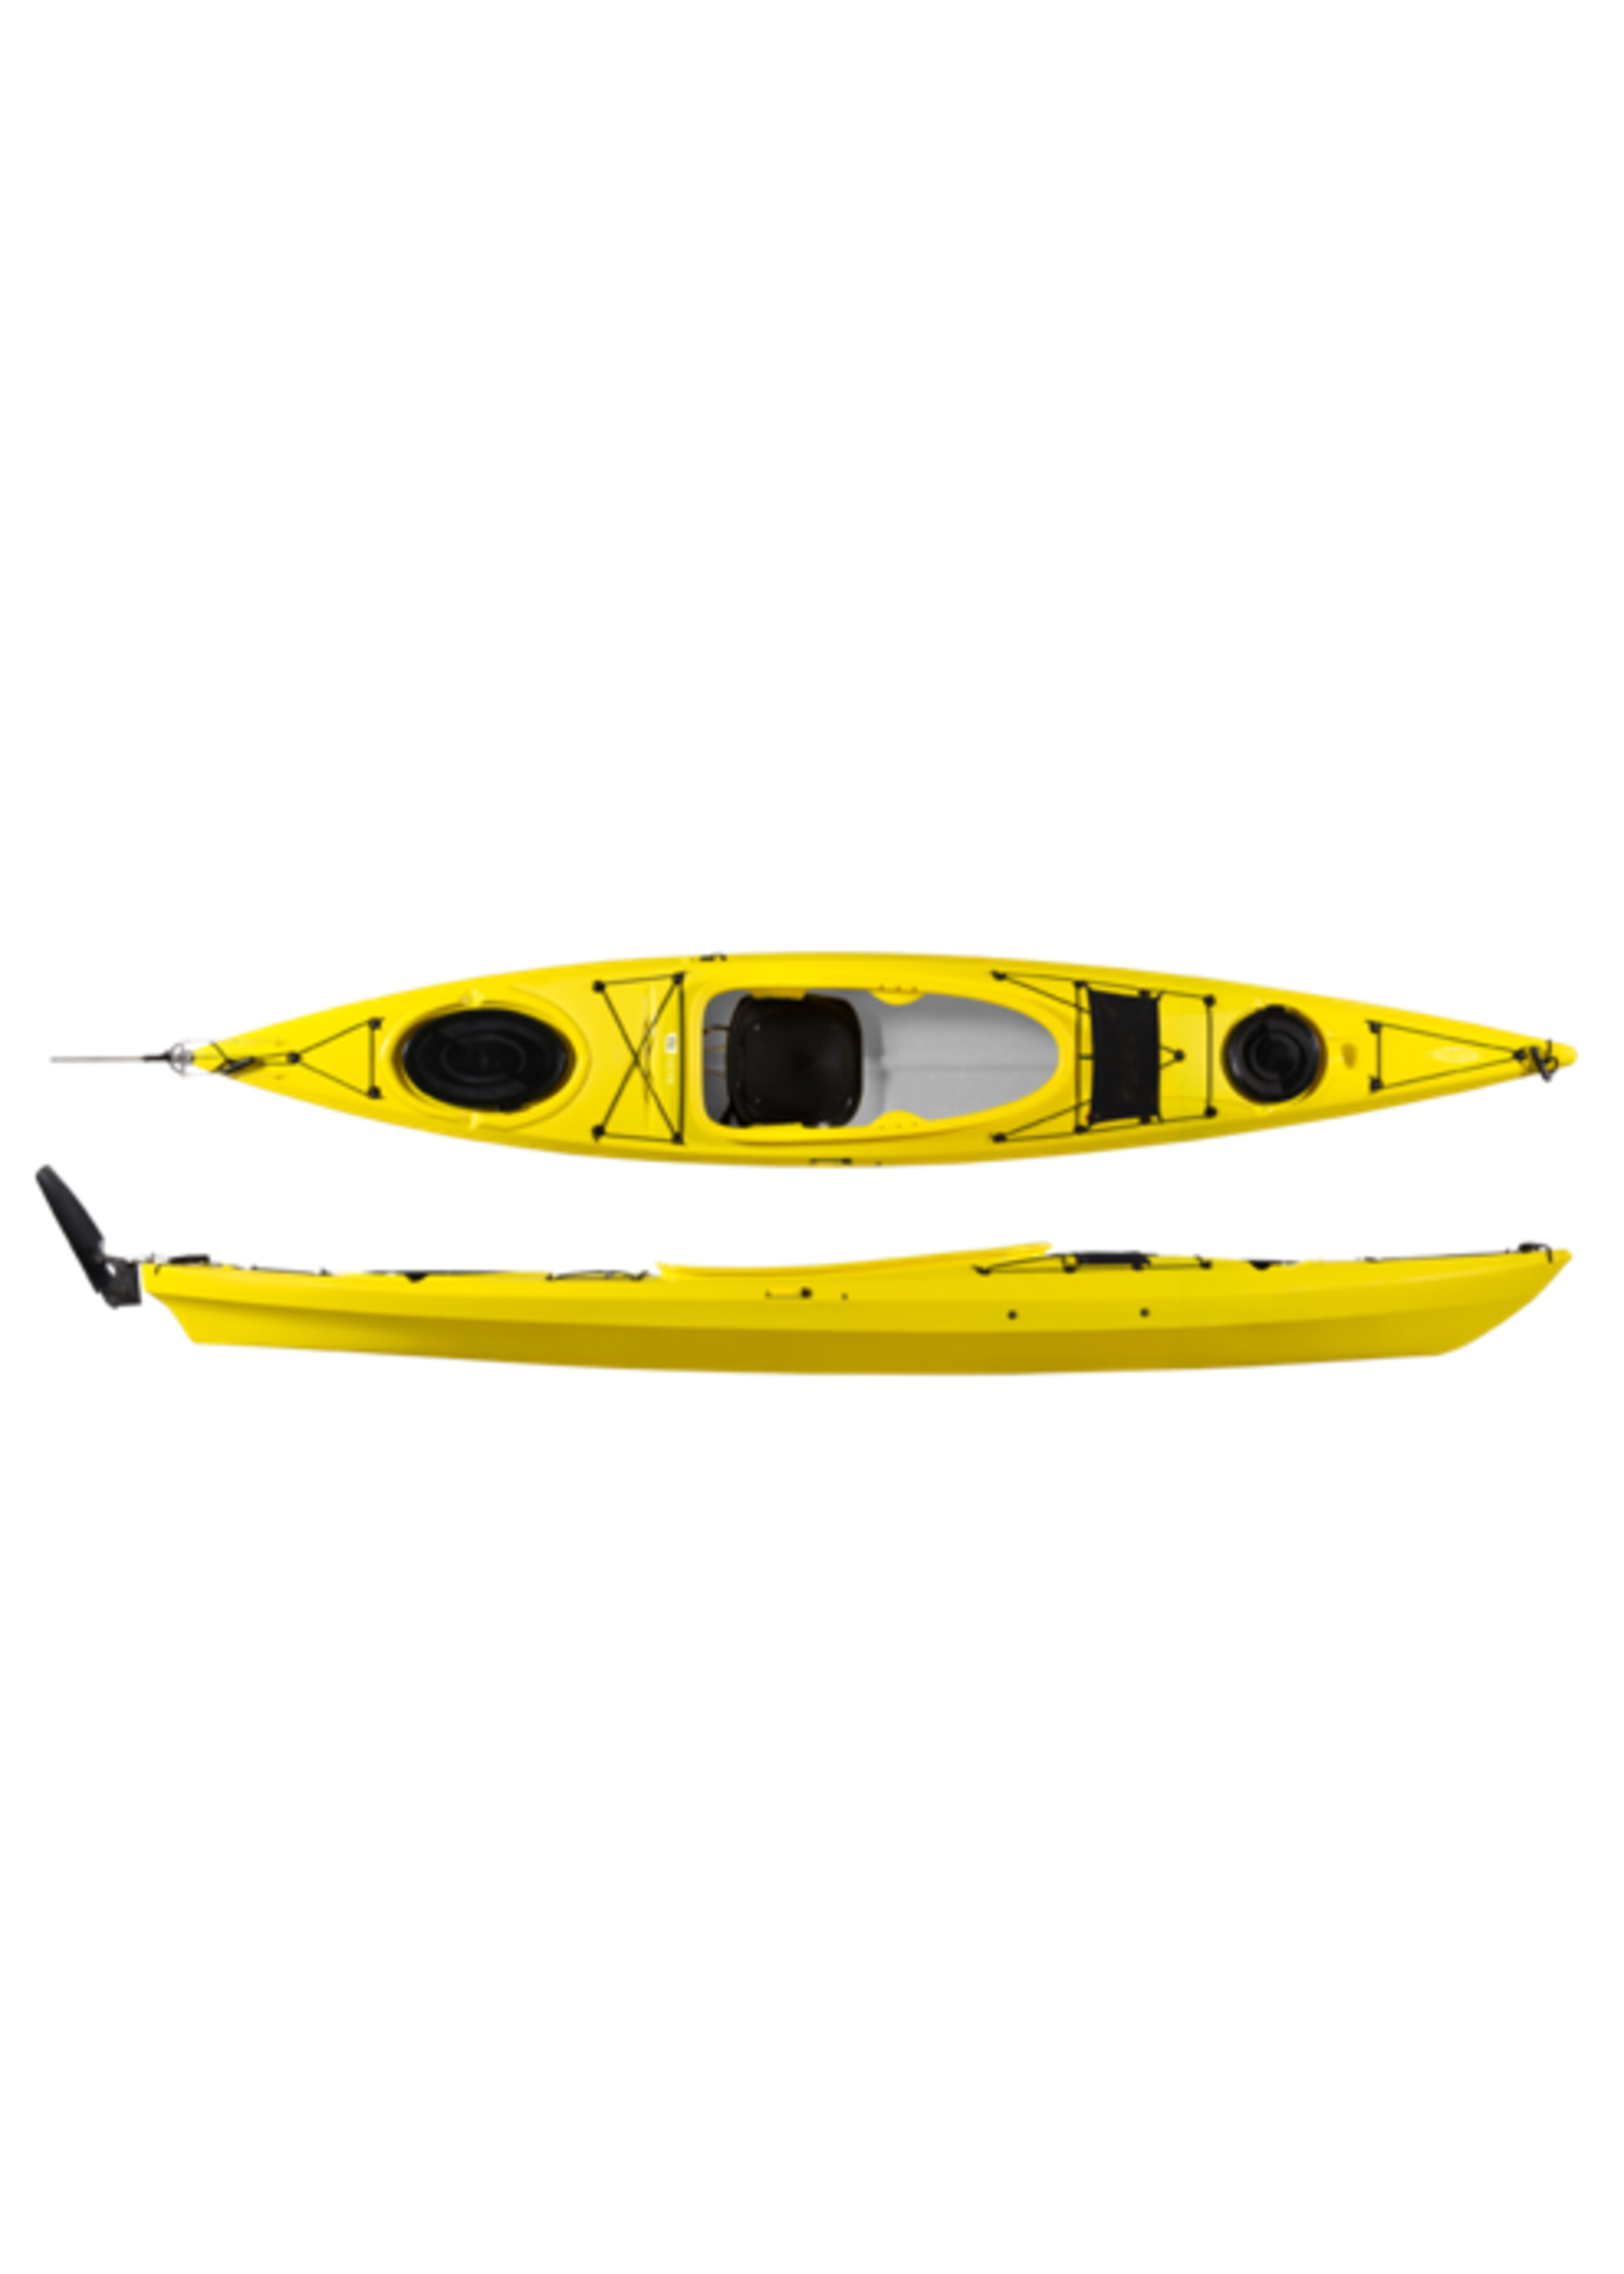 Tahe Outdoors Kayak hybride Fit 132 PE RS Jaune en kit - EN PROMOTION!